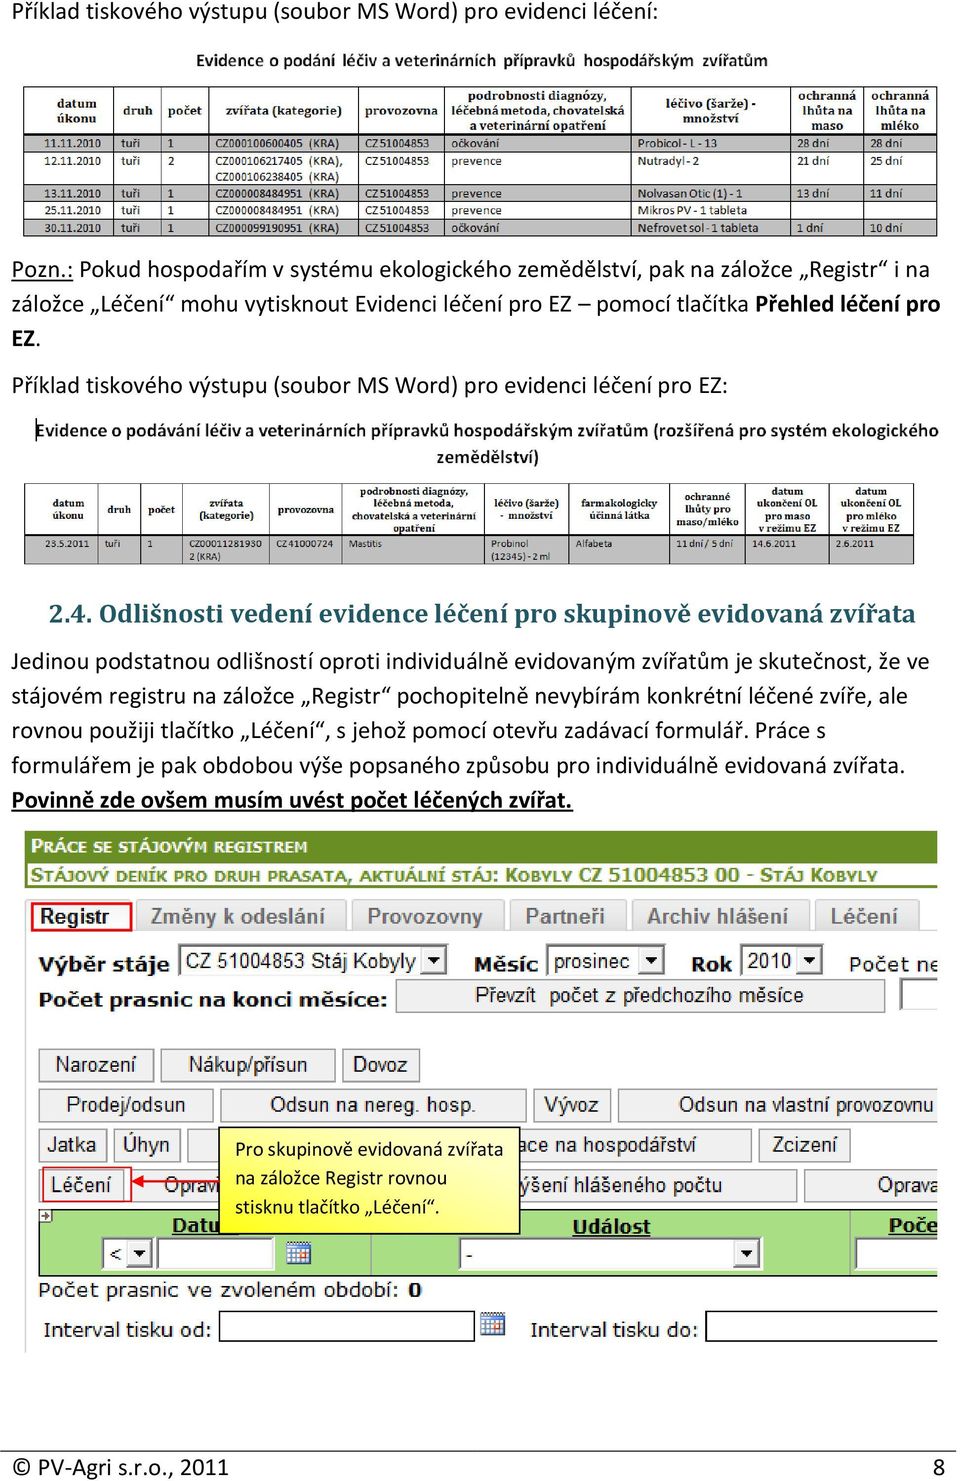 Příklad tiskového výstupu (soubor MS Word) pro evidenci léčení pro EZ: 2.4.